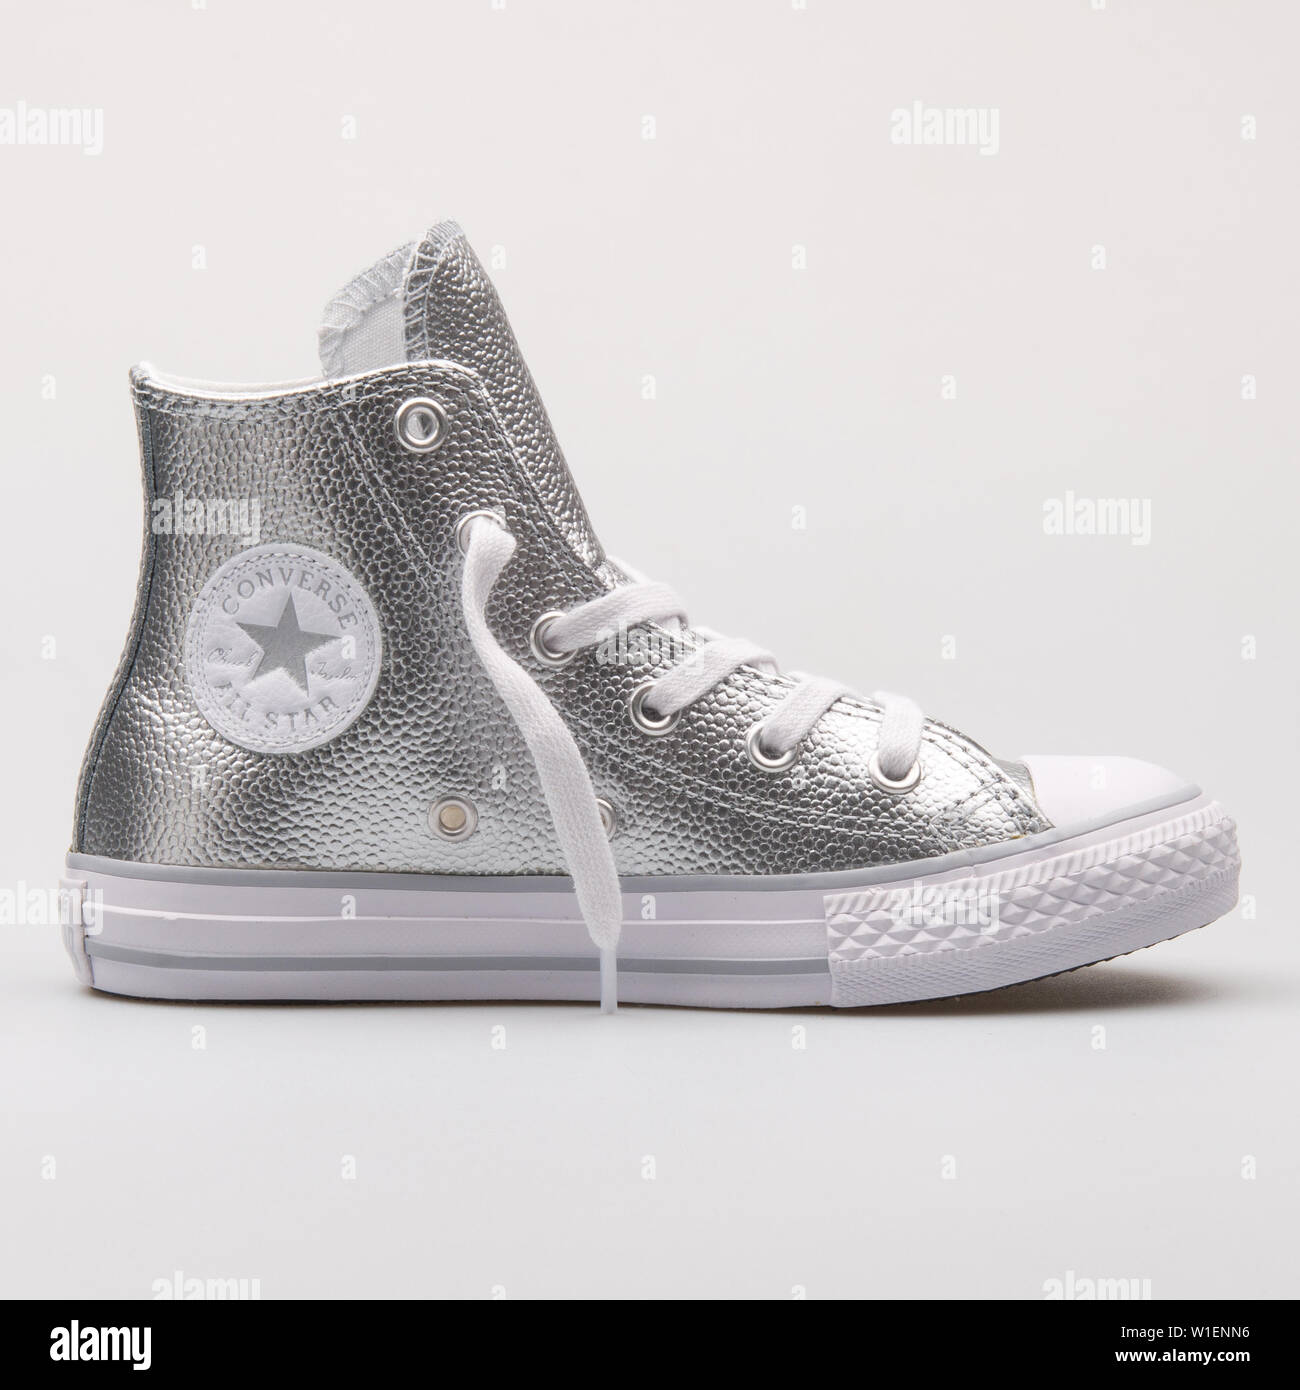 Wien, Österreich - 30 August 2017: Converse Chuck Taylor All Star High  silber Sneaker auf weißem Hintergrund Stockfotografie - Alamy